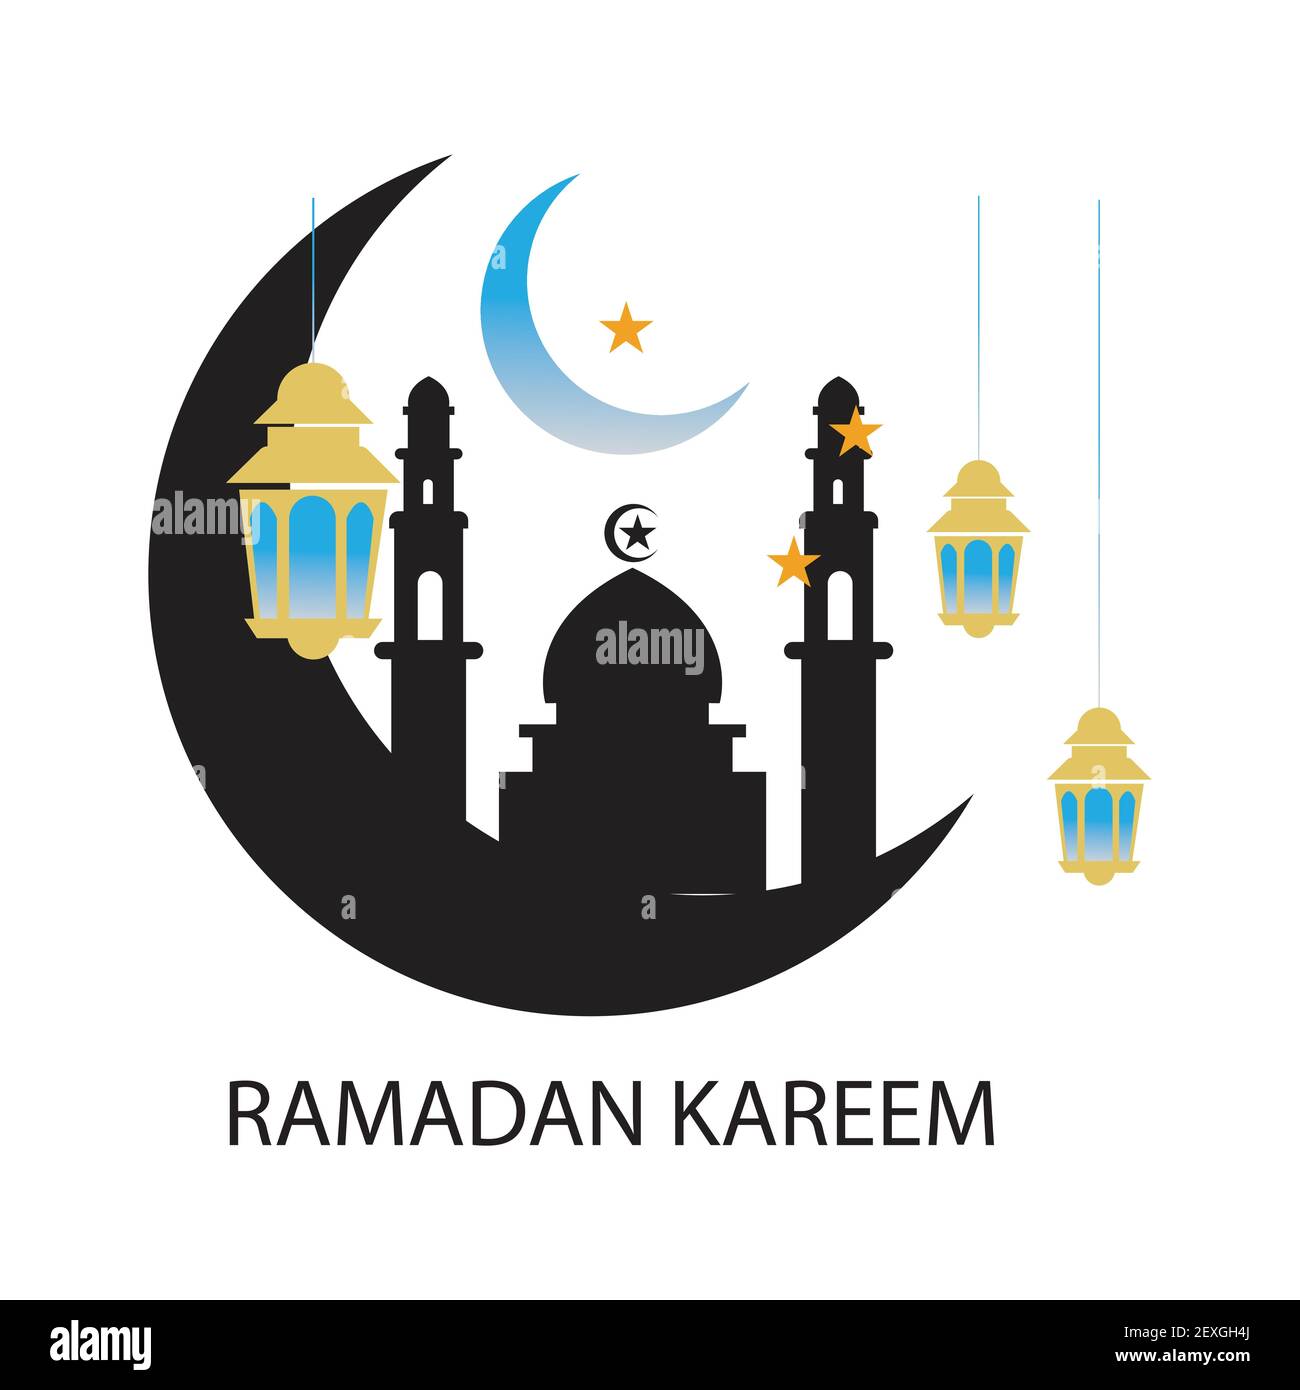 Marhaban ya ramadhan meaning